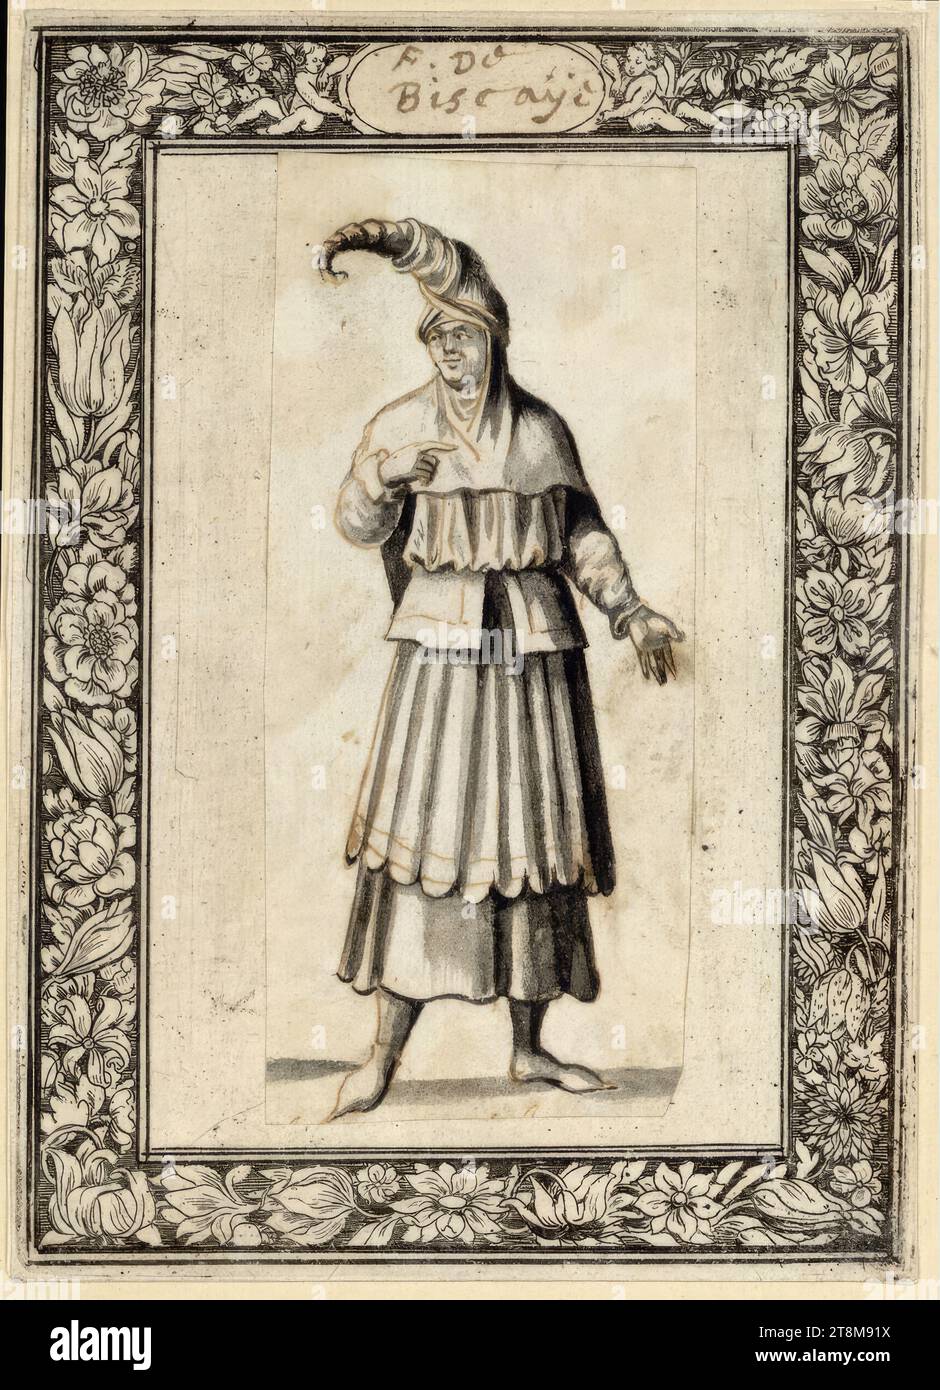 Donna di Biscaglia, tra il 1650 e il 1664, disegnatrice, penna e inchiostro marrone, lavaggio grigio; incollata a un foglio con striscia decorativa incisa (filo di fiori), 9,3 x 4,1 cm, M.O. in cartiglio 'F. de Biscaye' (penna marrone Foto Stock